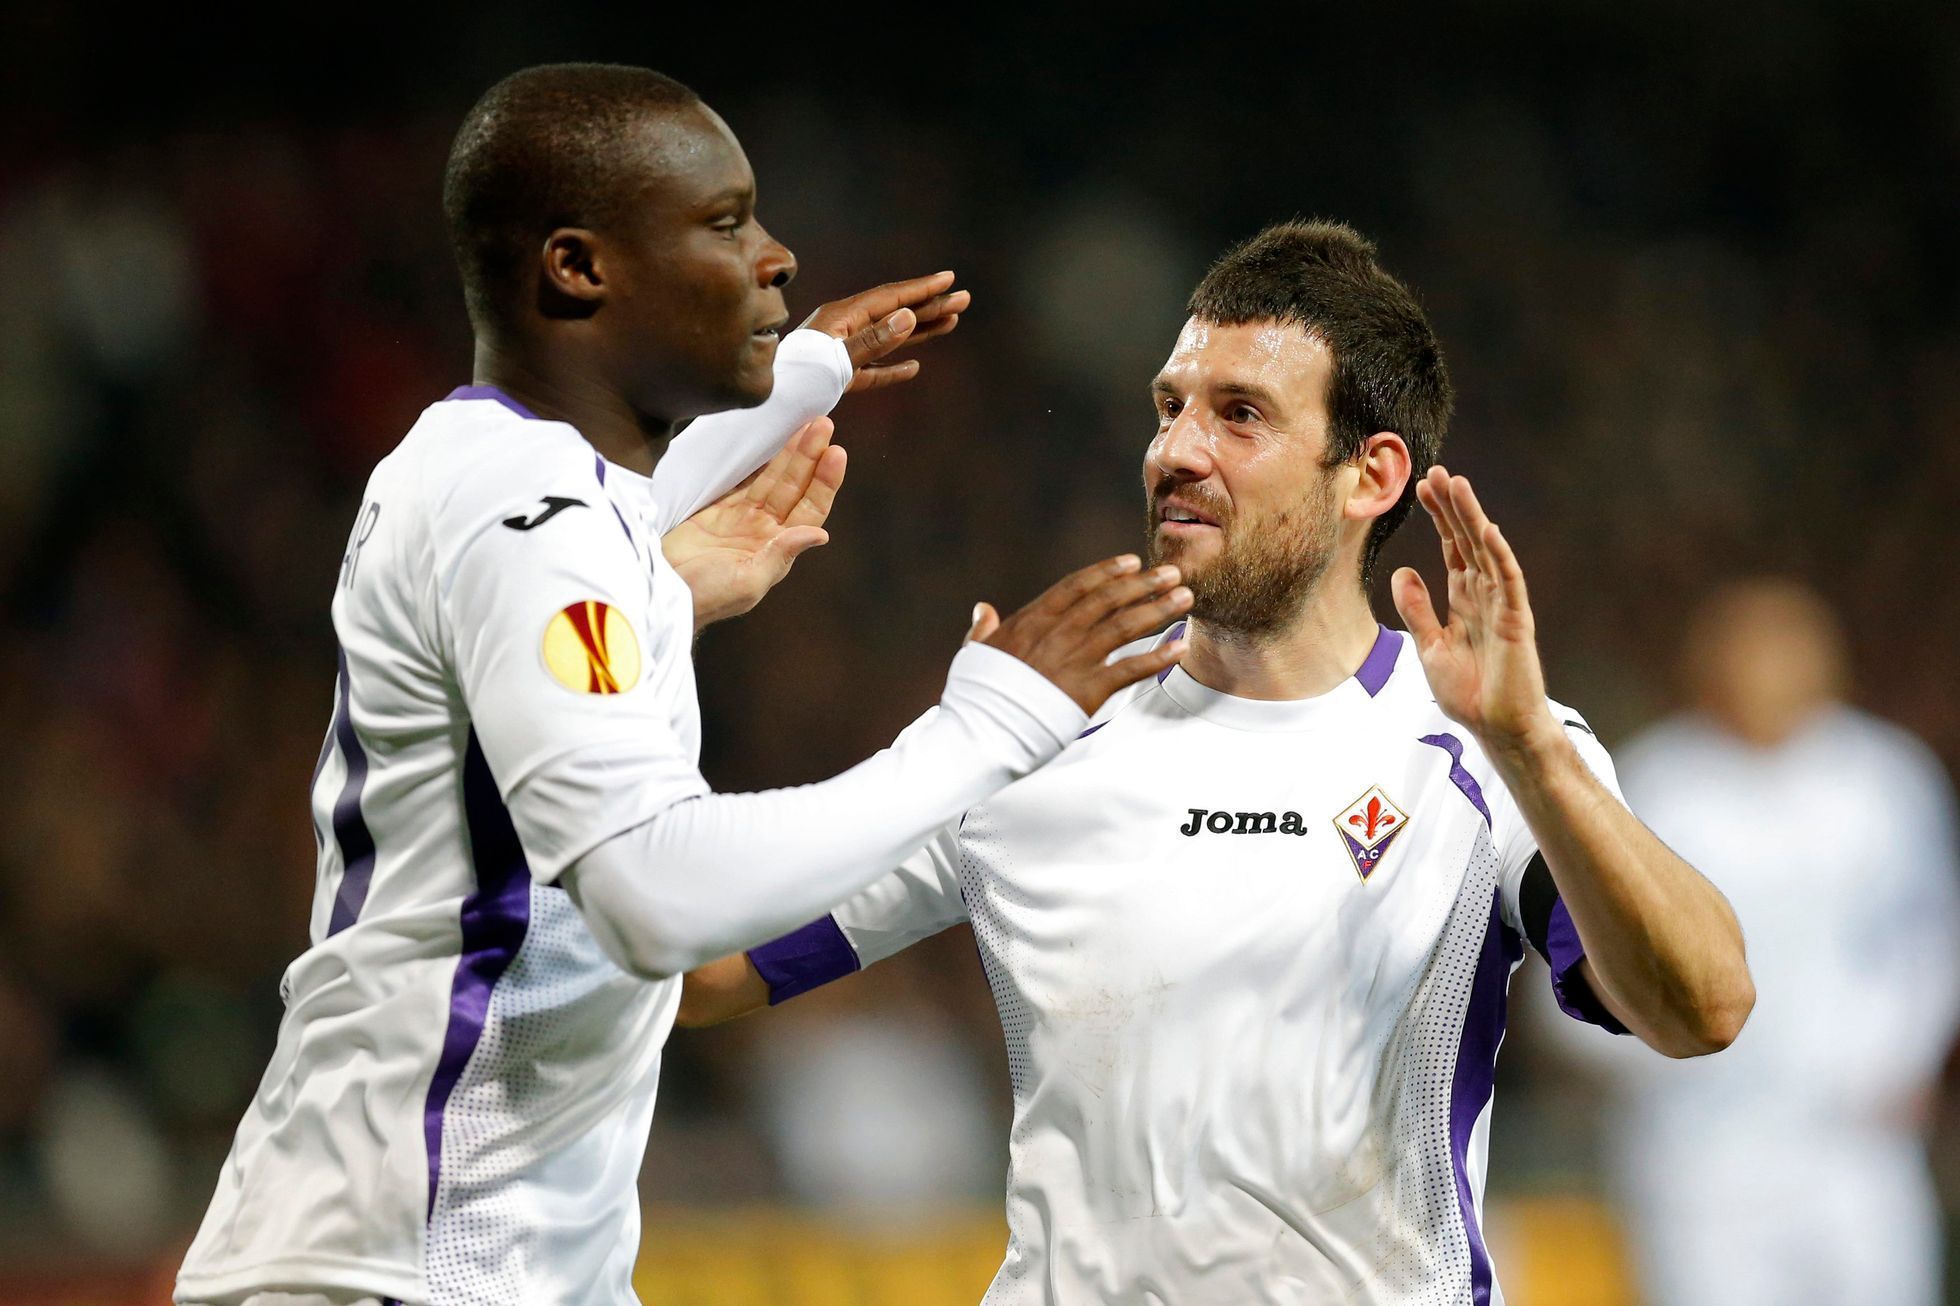 Fiorentina (Babacar) v Evropské lize 2014-15